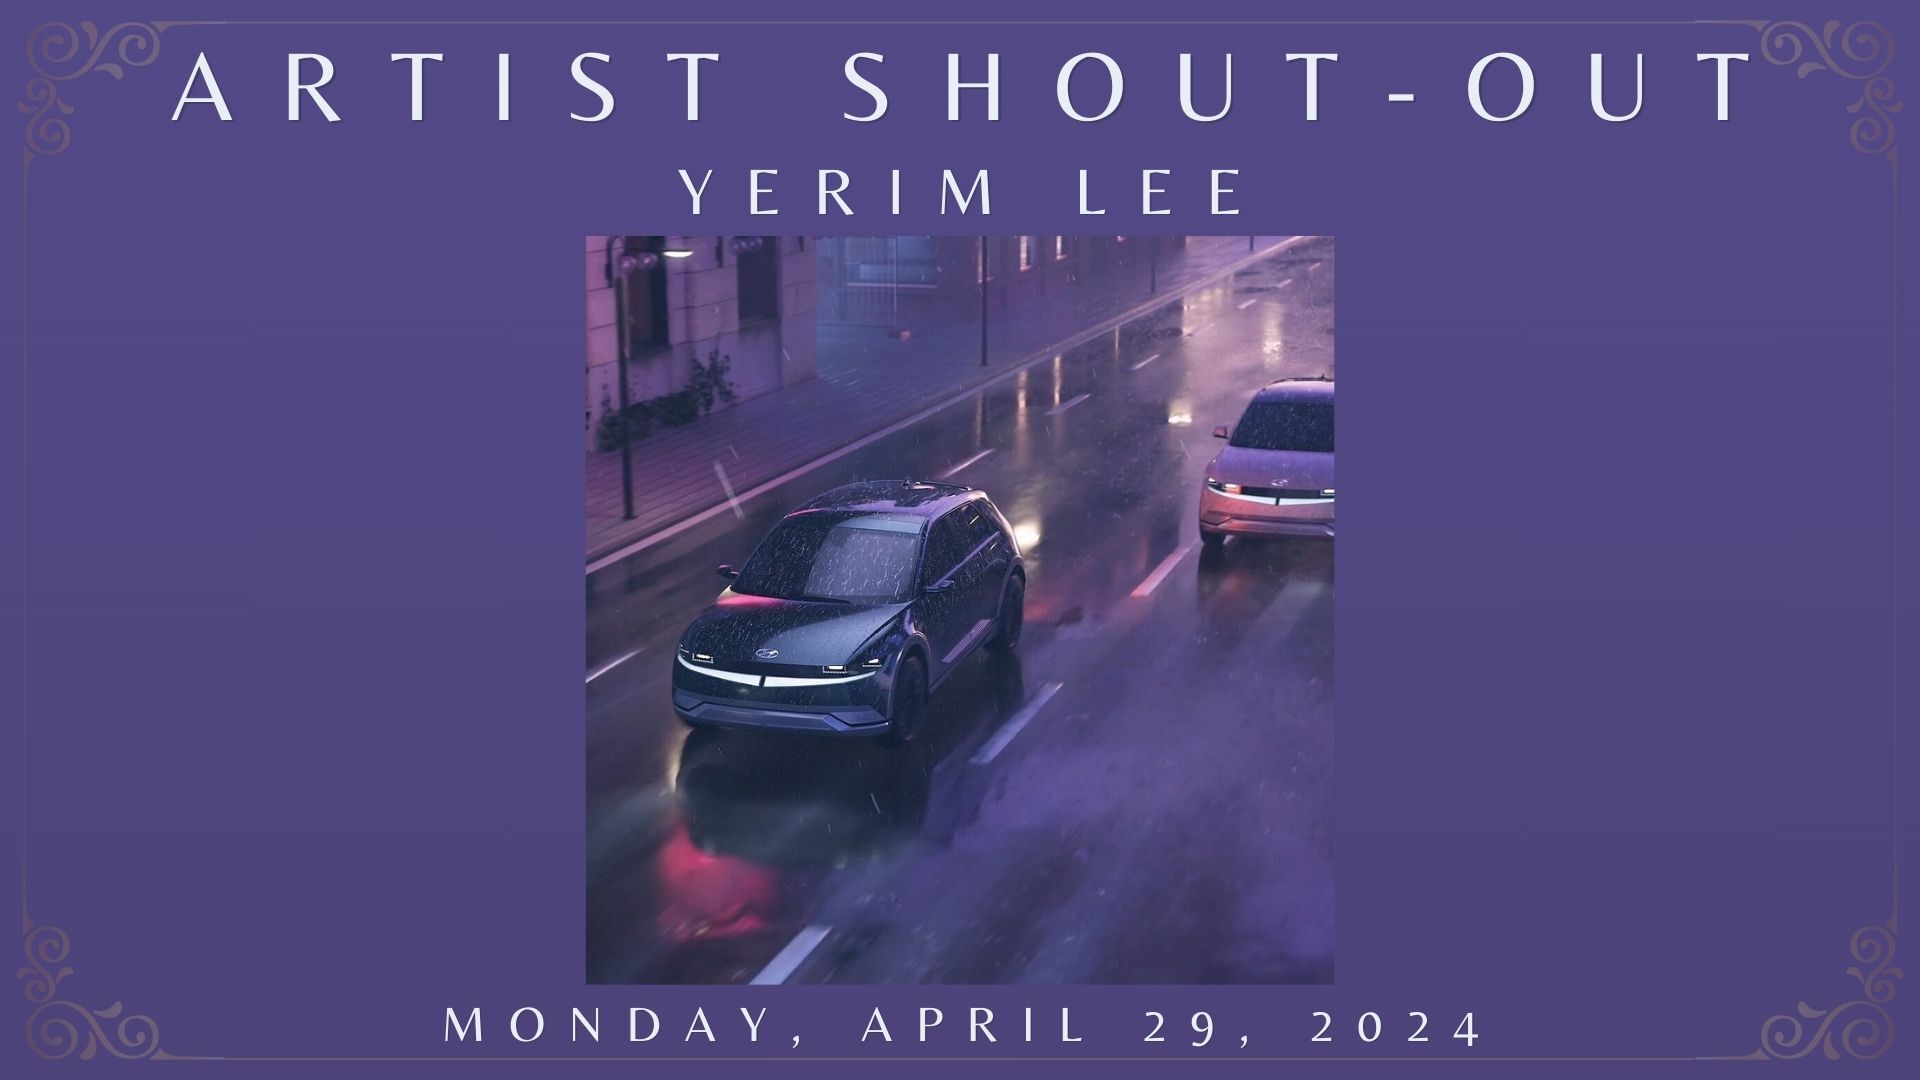 ARTIST SHOUT-OUT: Monday, April 29, 2024